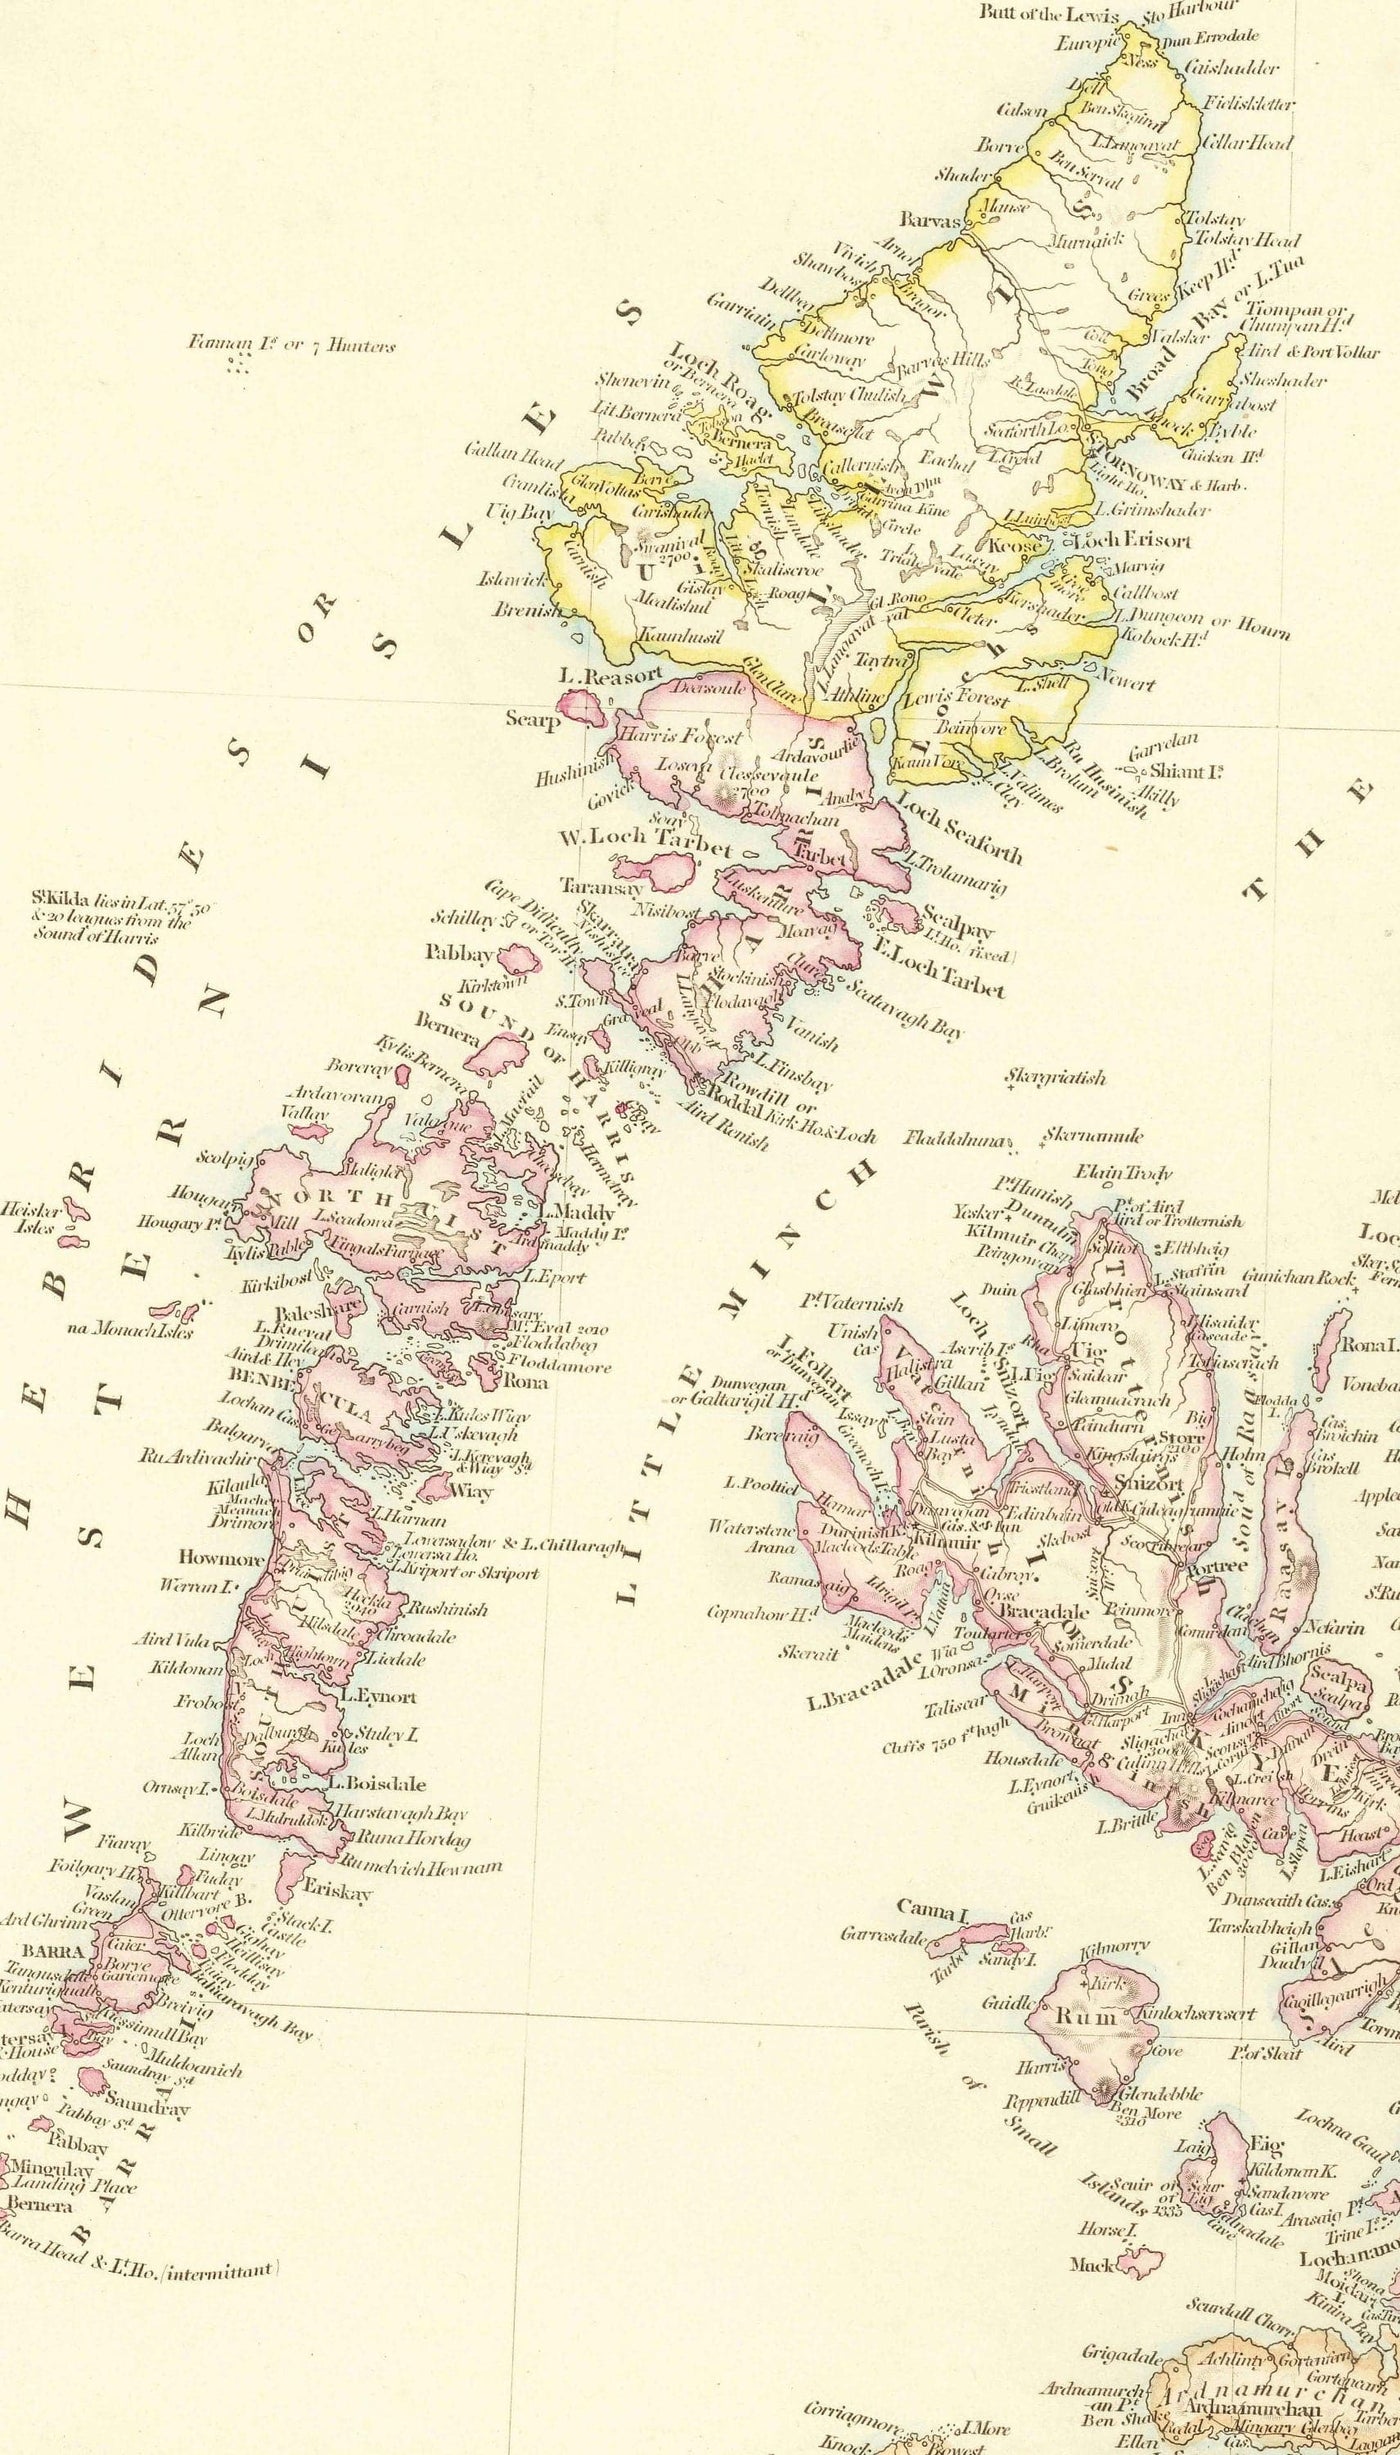 Ancienne carte d'Écosse, 1846 par Arrowsmith - Magnifique atlas victorien coloré à la main - Comtés, villes, routes